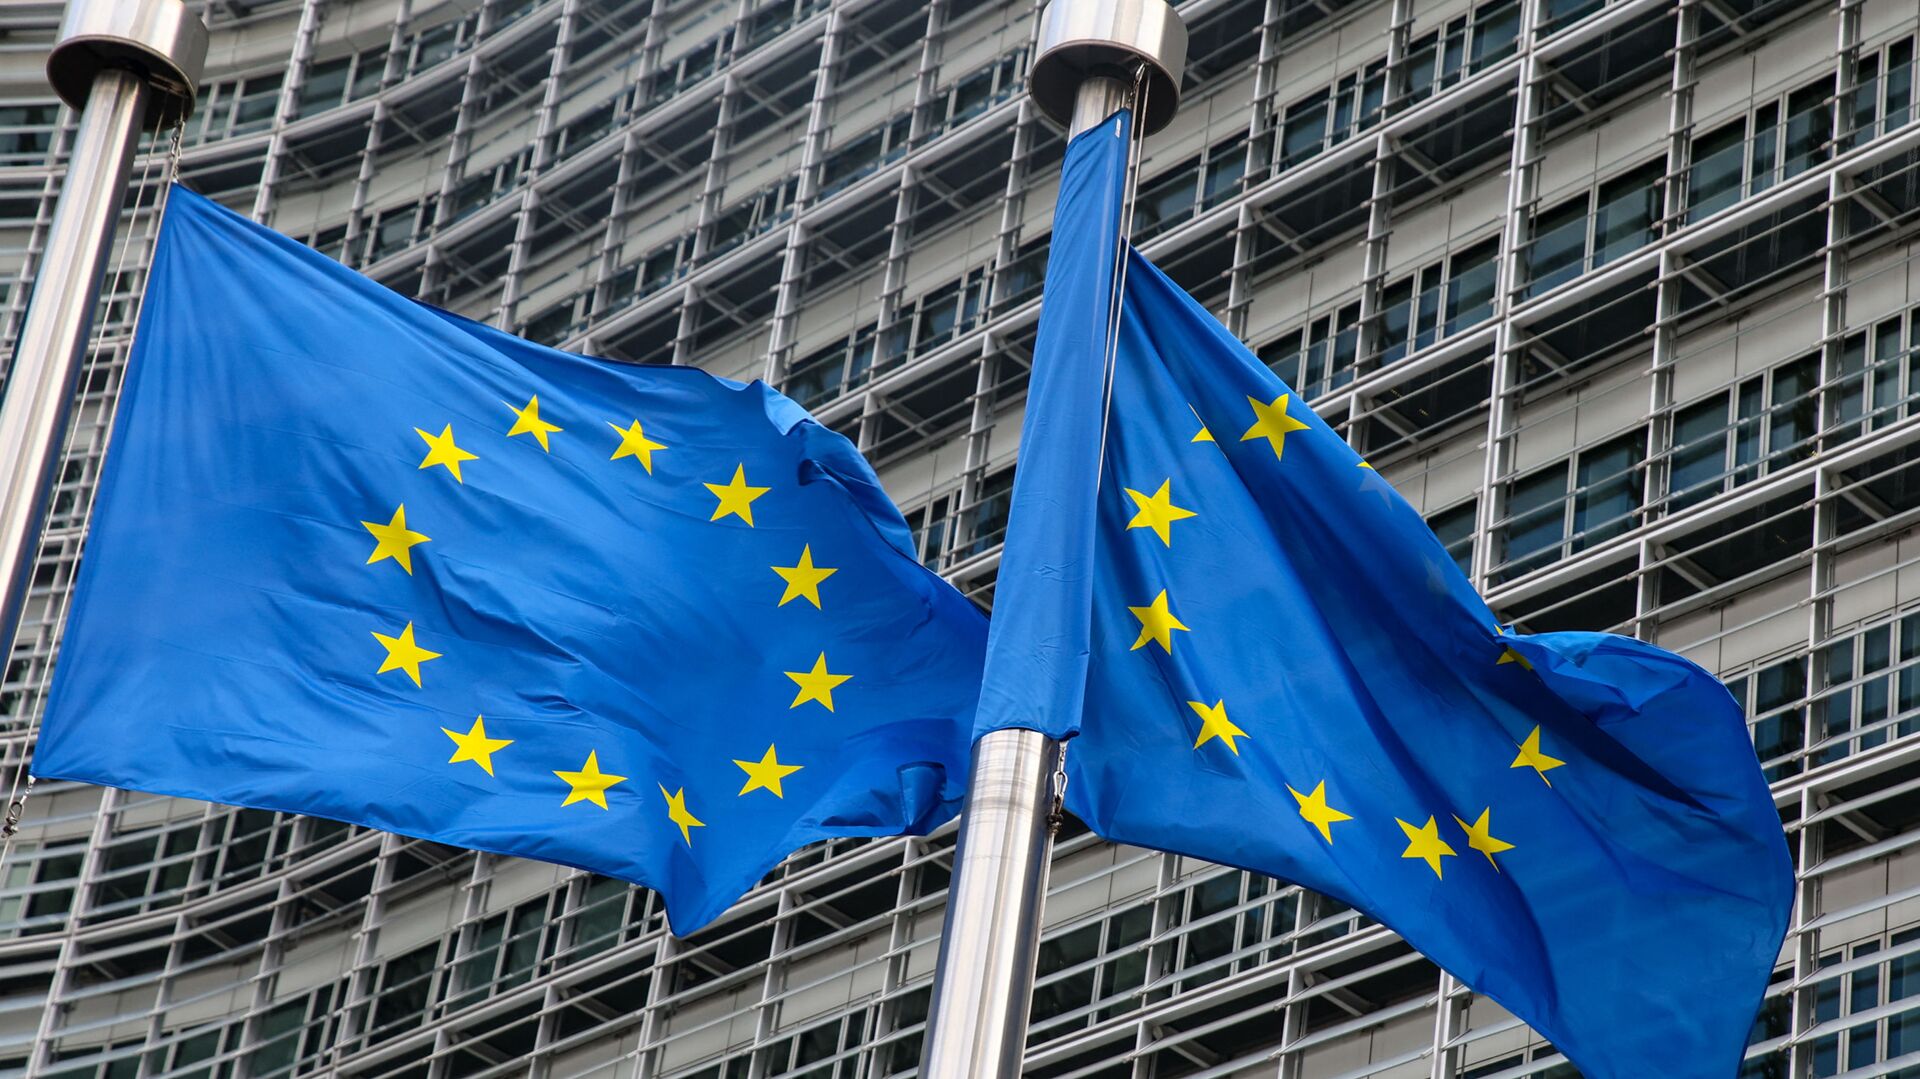 Флаги Европейского союза у штаб-квартиры Европейской комиссии в Брюсселе  - Sputnik Литва, 1920, 01.05.2021